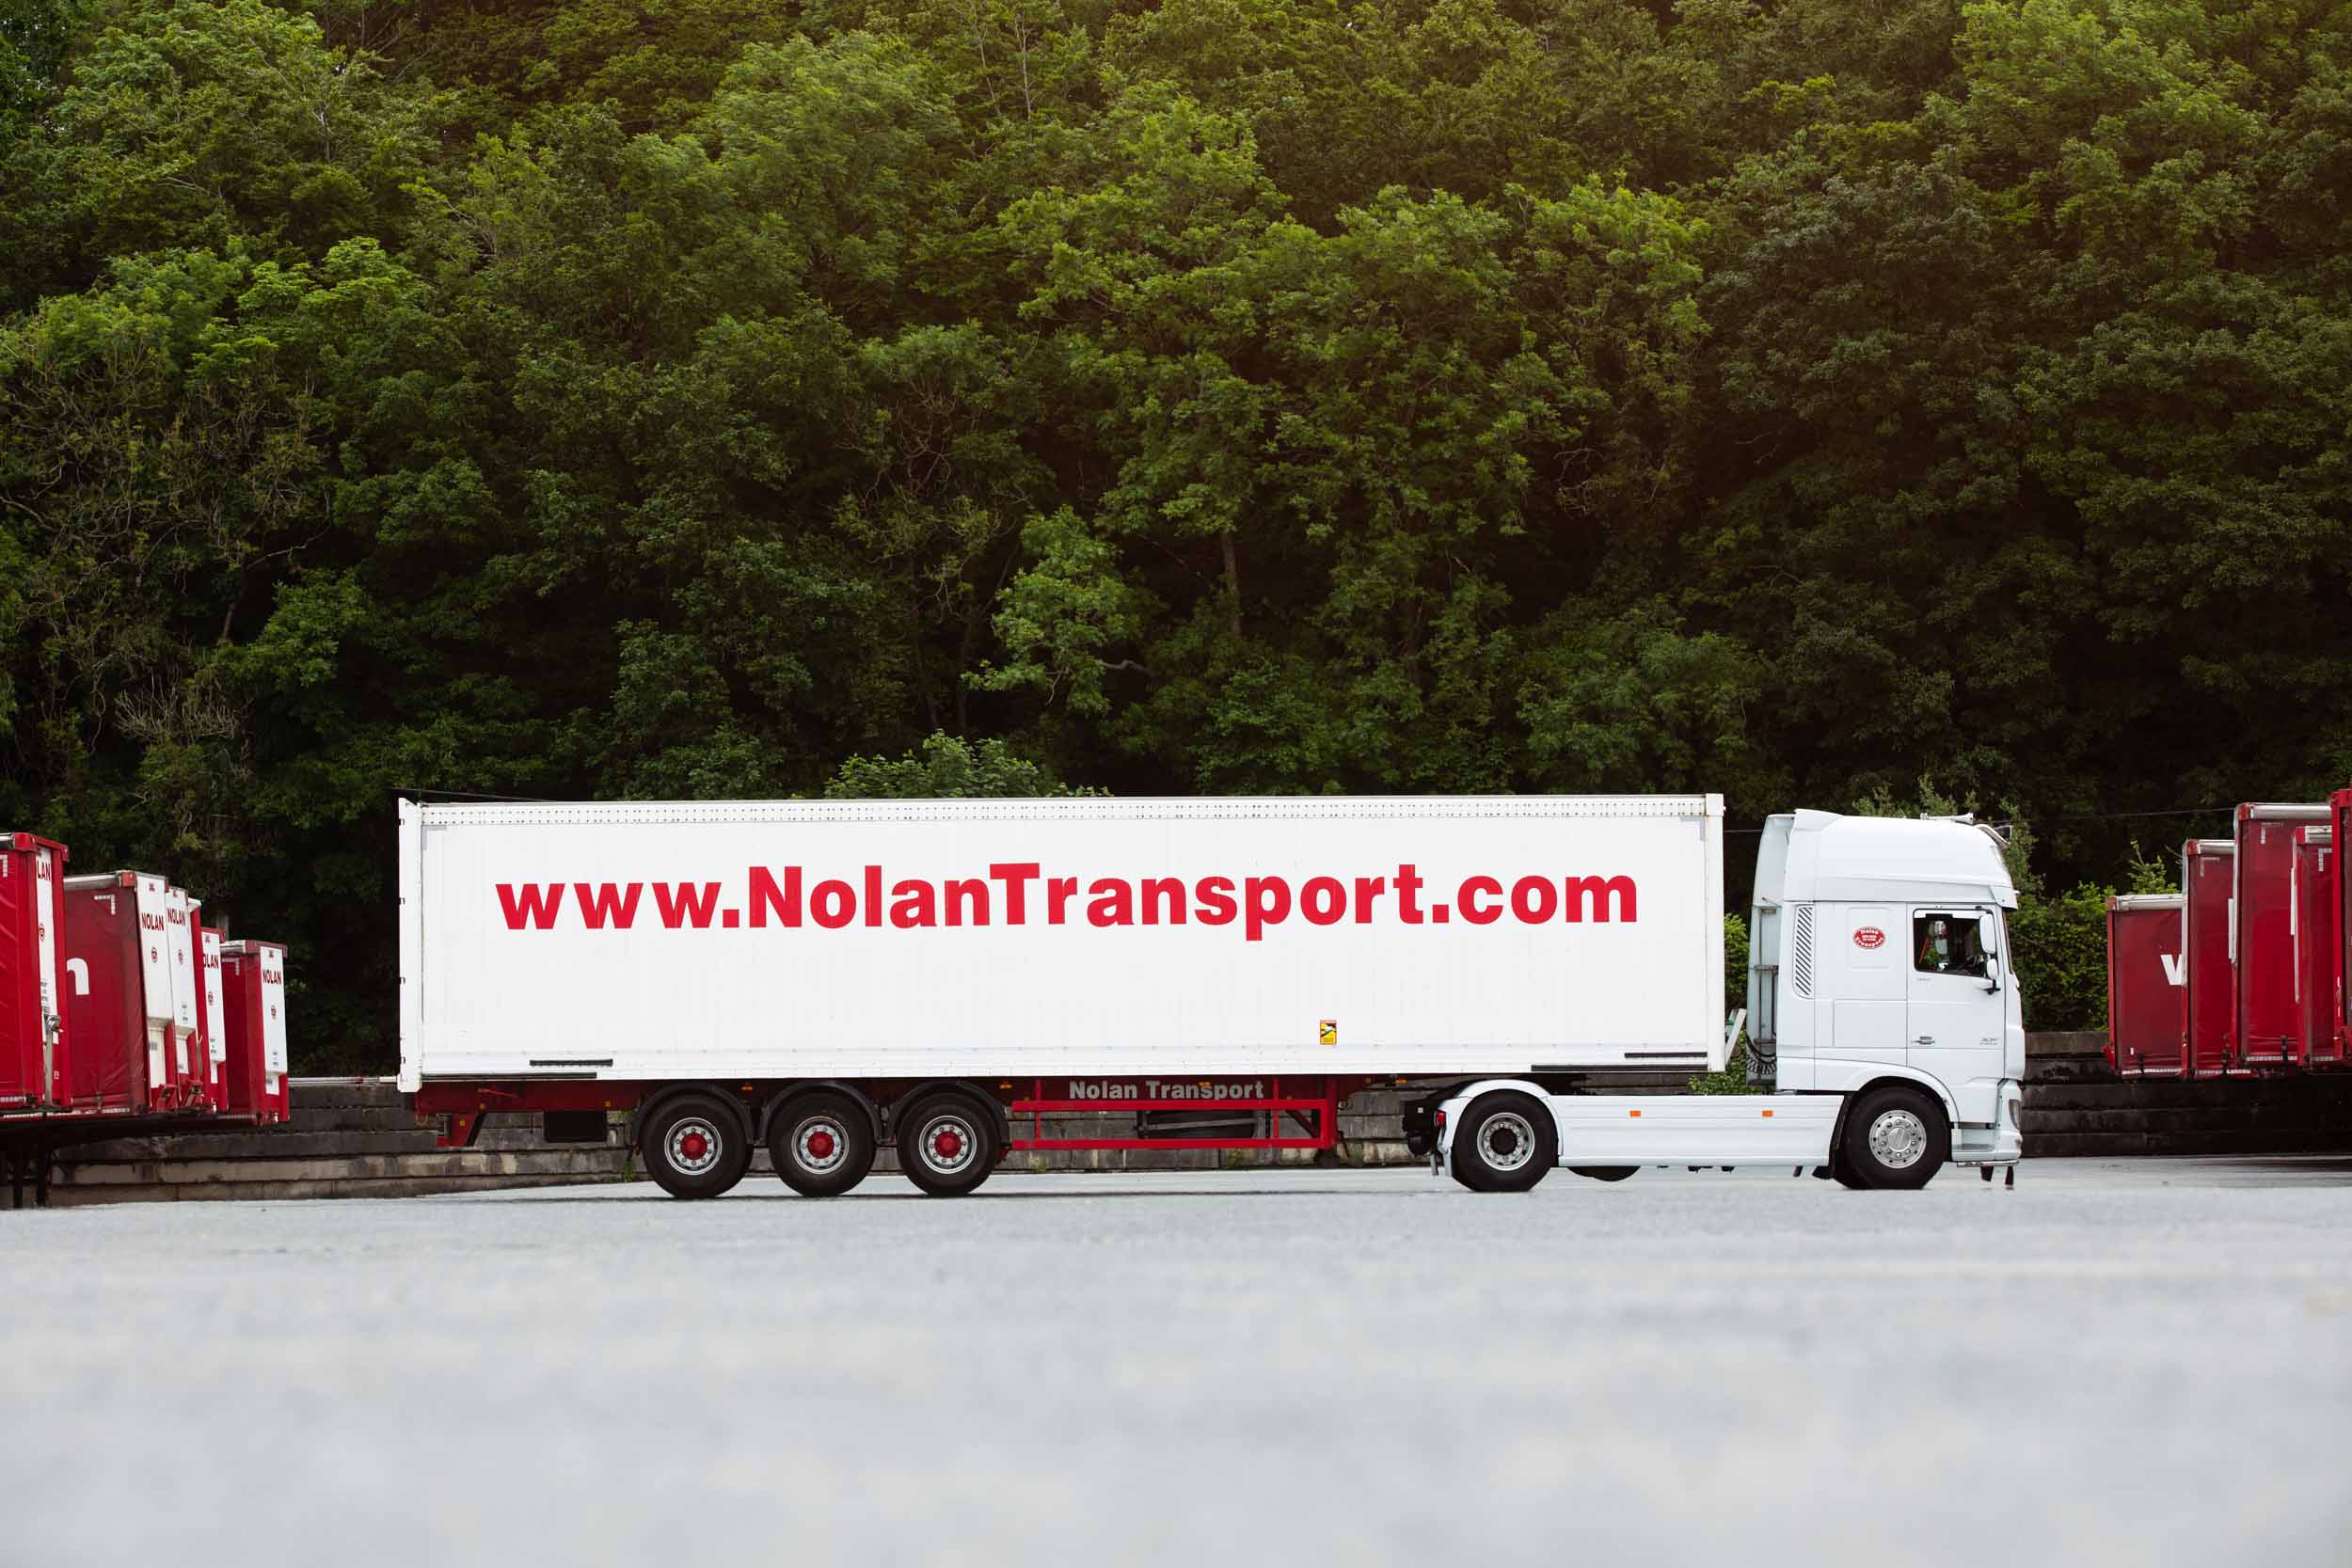 Nolan logistics truck